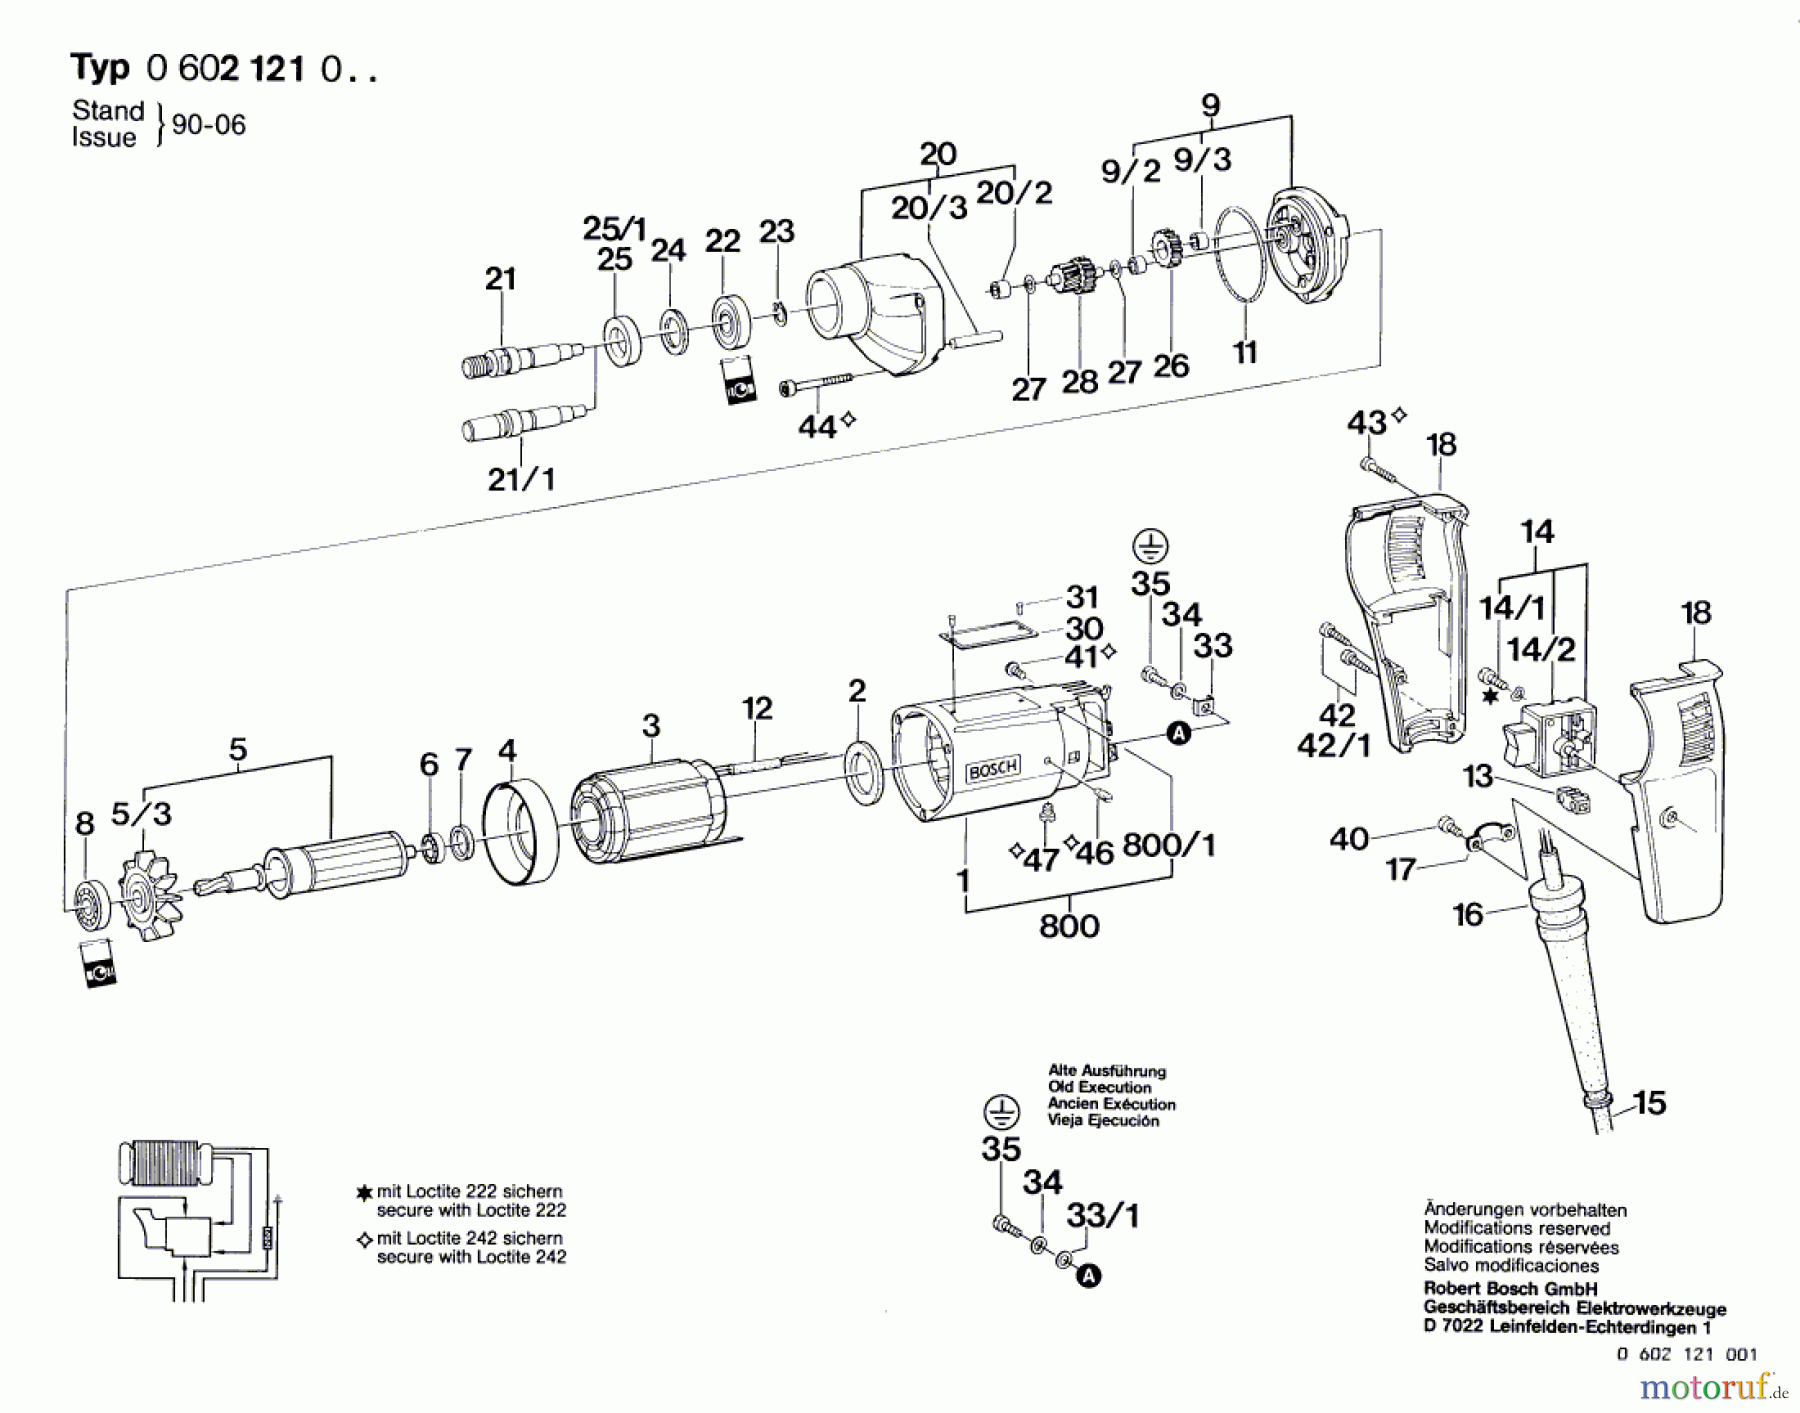  Bosch Werkzeug Hf-Bohrmaschine GR.55 Seite 1